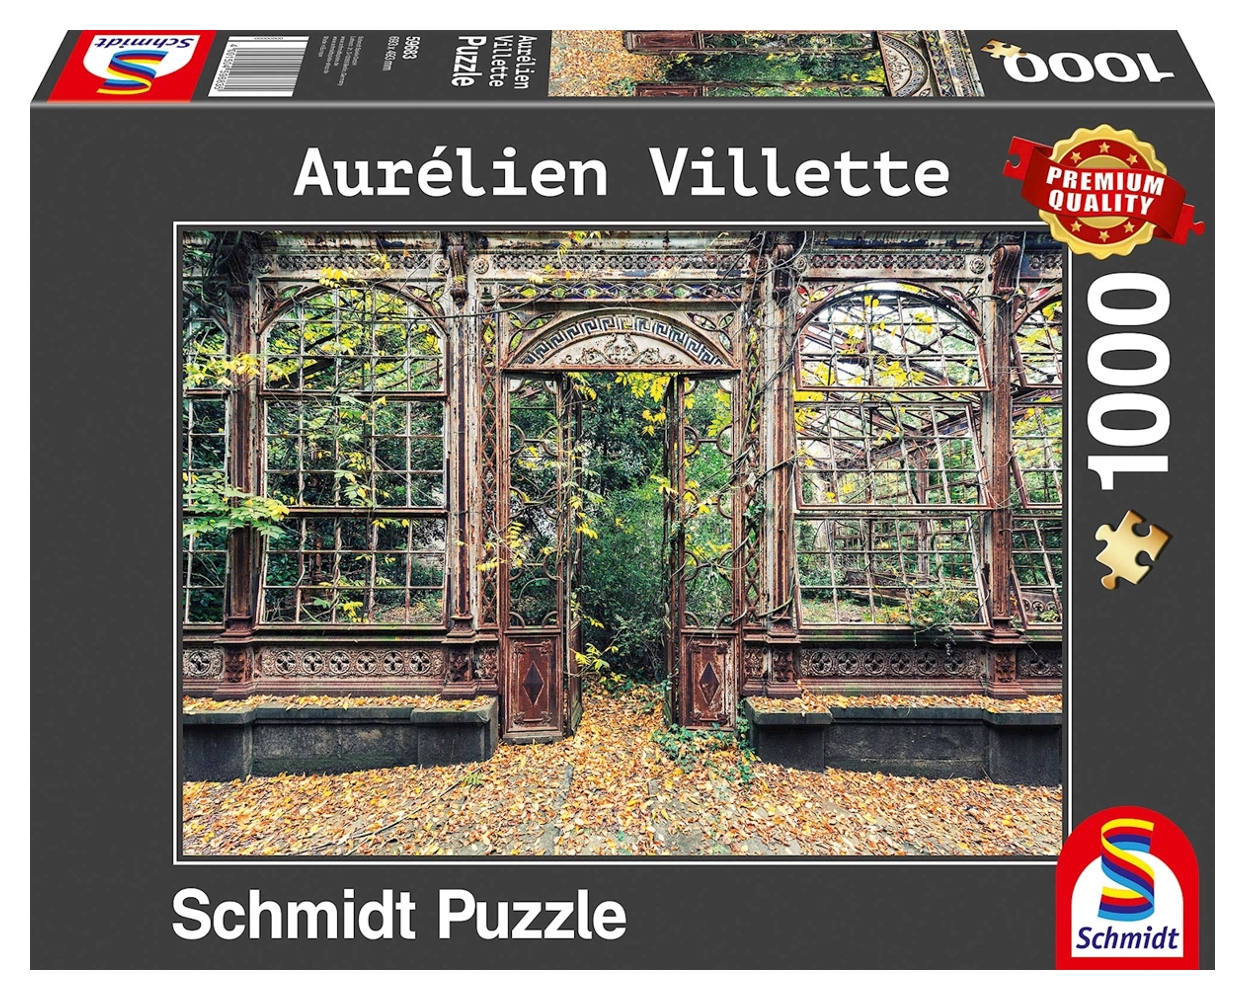 Bewachsene Bogenfenster - Aurelien Villette